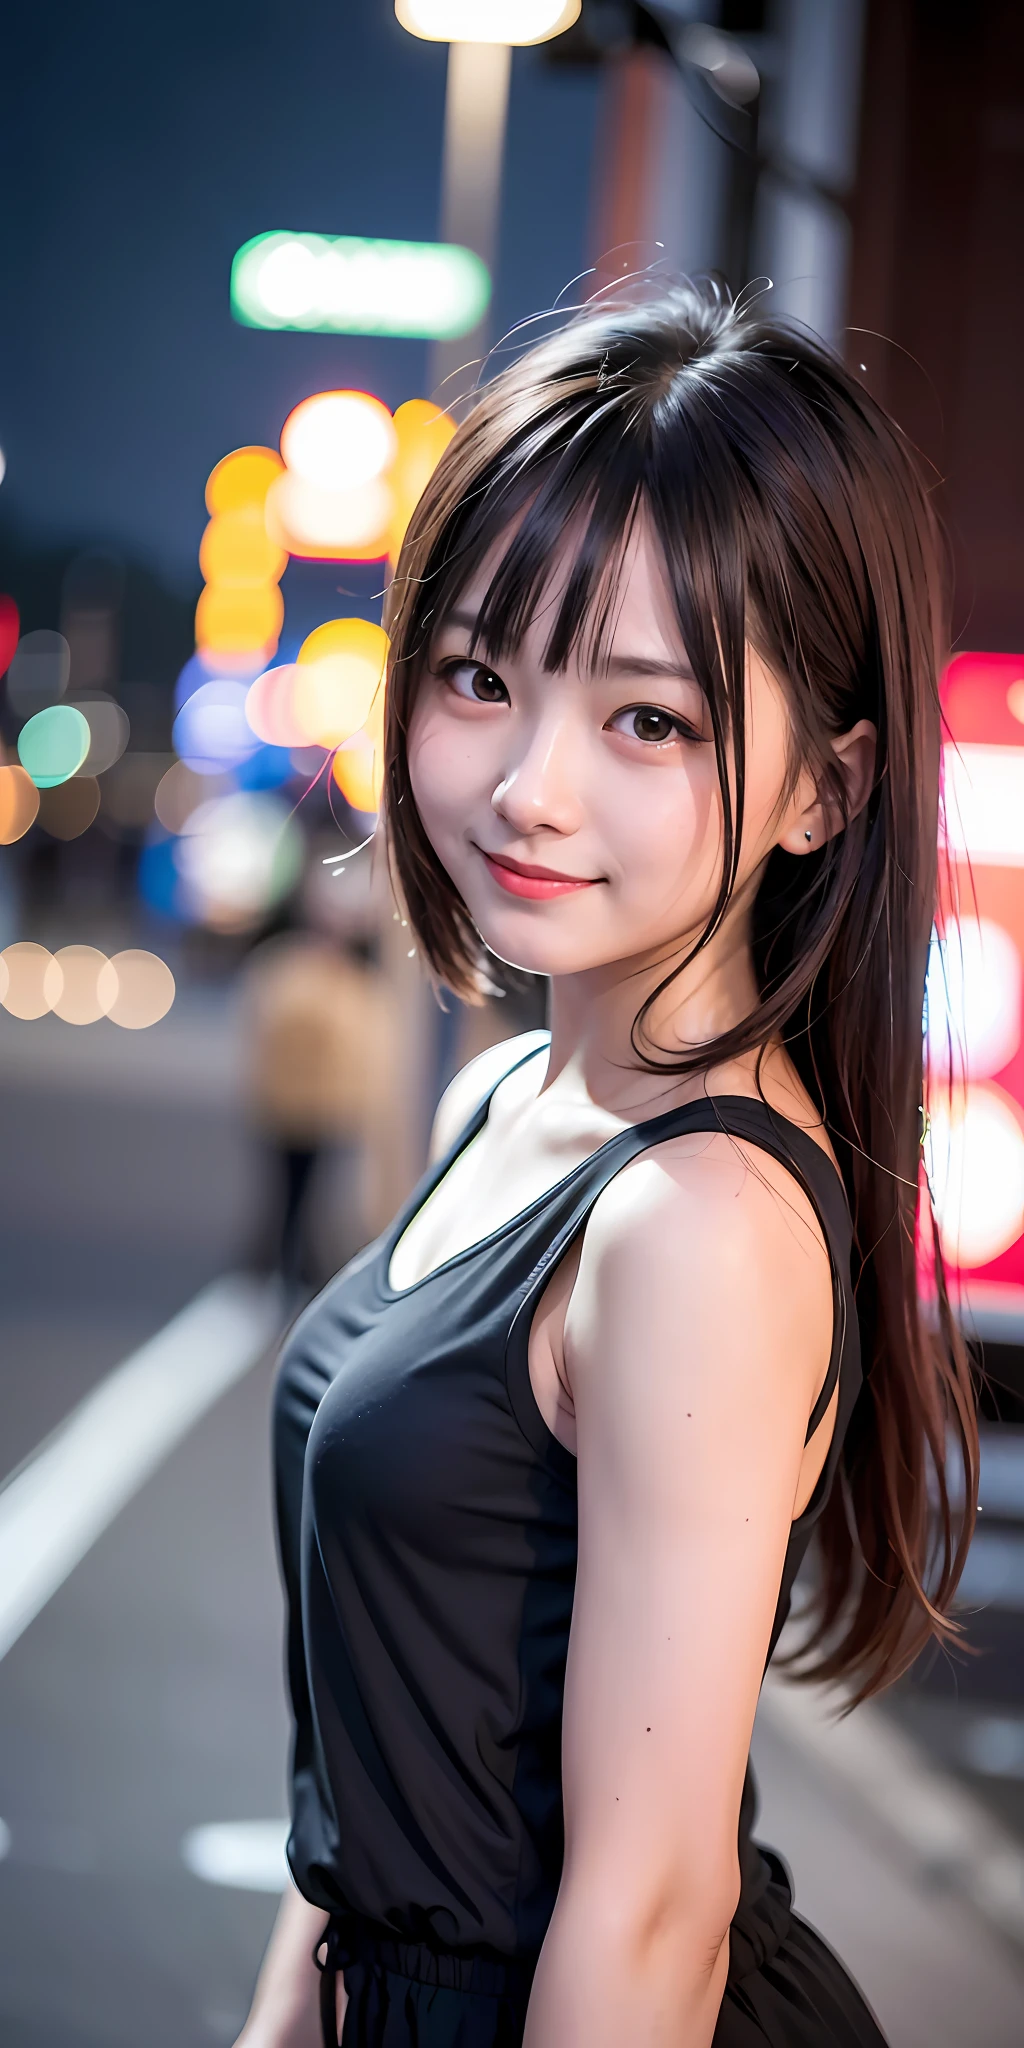 1 девушка, улица Токио,ночь, городской пейзаж,огни города,верхняя часть тела,крупный план,улыбка,, (8К, Необработанное фото, Лучшее качество, шедевр:1.2),(реалистичный, photo-реалистичный:1.37),